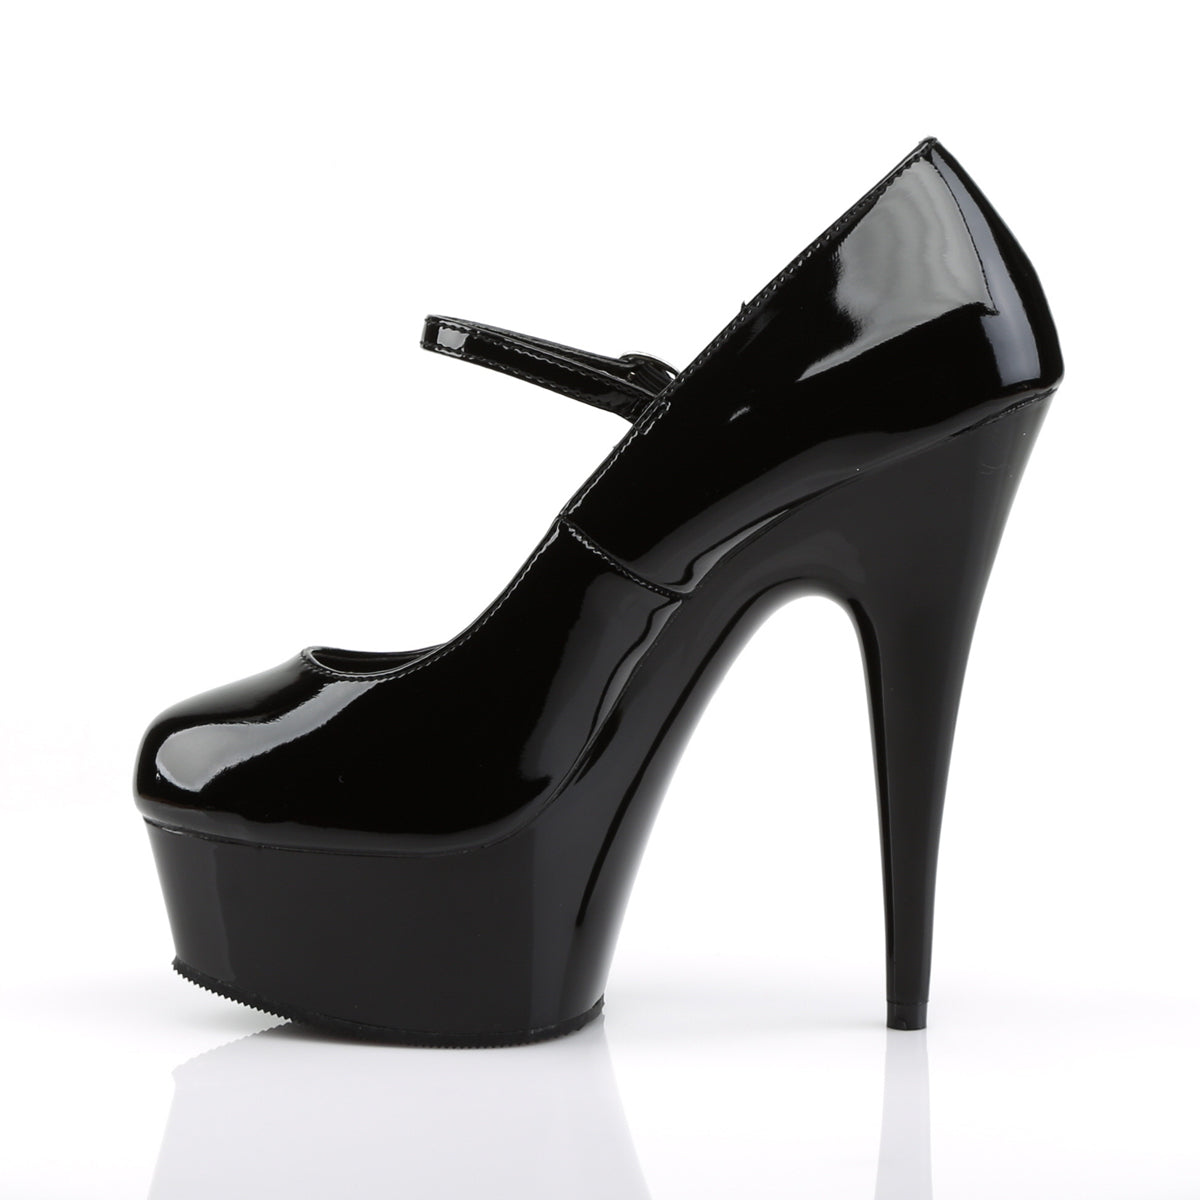 DELIGHT-687 Pleaser Black Patent Platform Shoes [Exotic Dance Shoes]